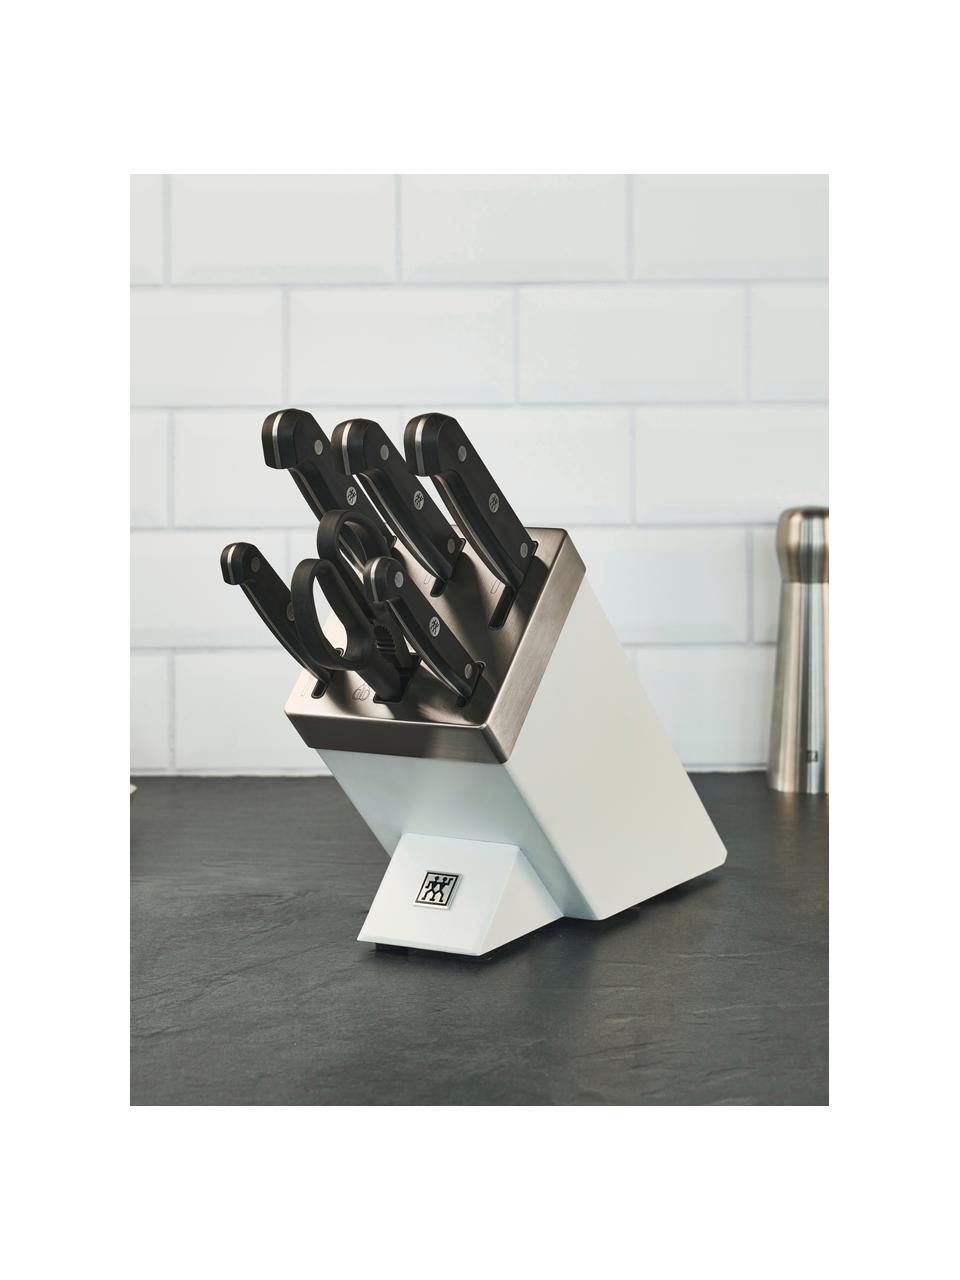 Selbstschärfender Messerblock Gourmet, 7-tlg., Messer: Edelstahl, Griff: Kunststoff, Weiß, Set mit verschiedenen Größen